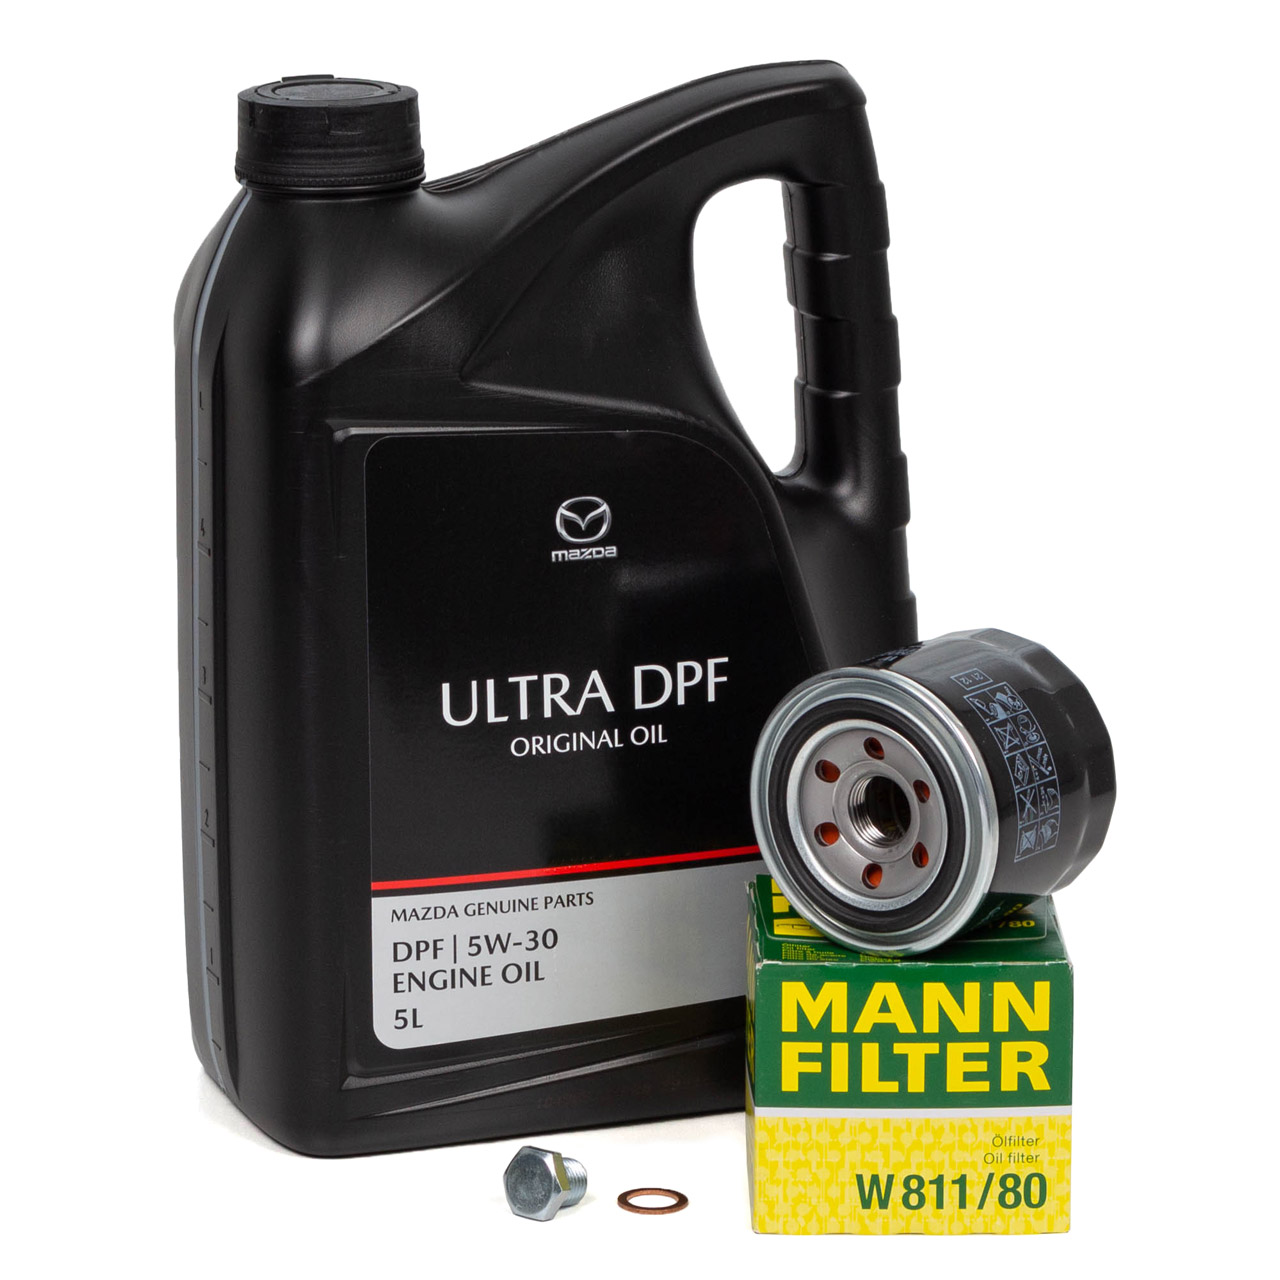 5L ORIGINAL Motoröl ULTRA DPF 5W30 + MANN Ölfilter MAZDA 3 323 5 6 626 CX-7 Premacy